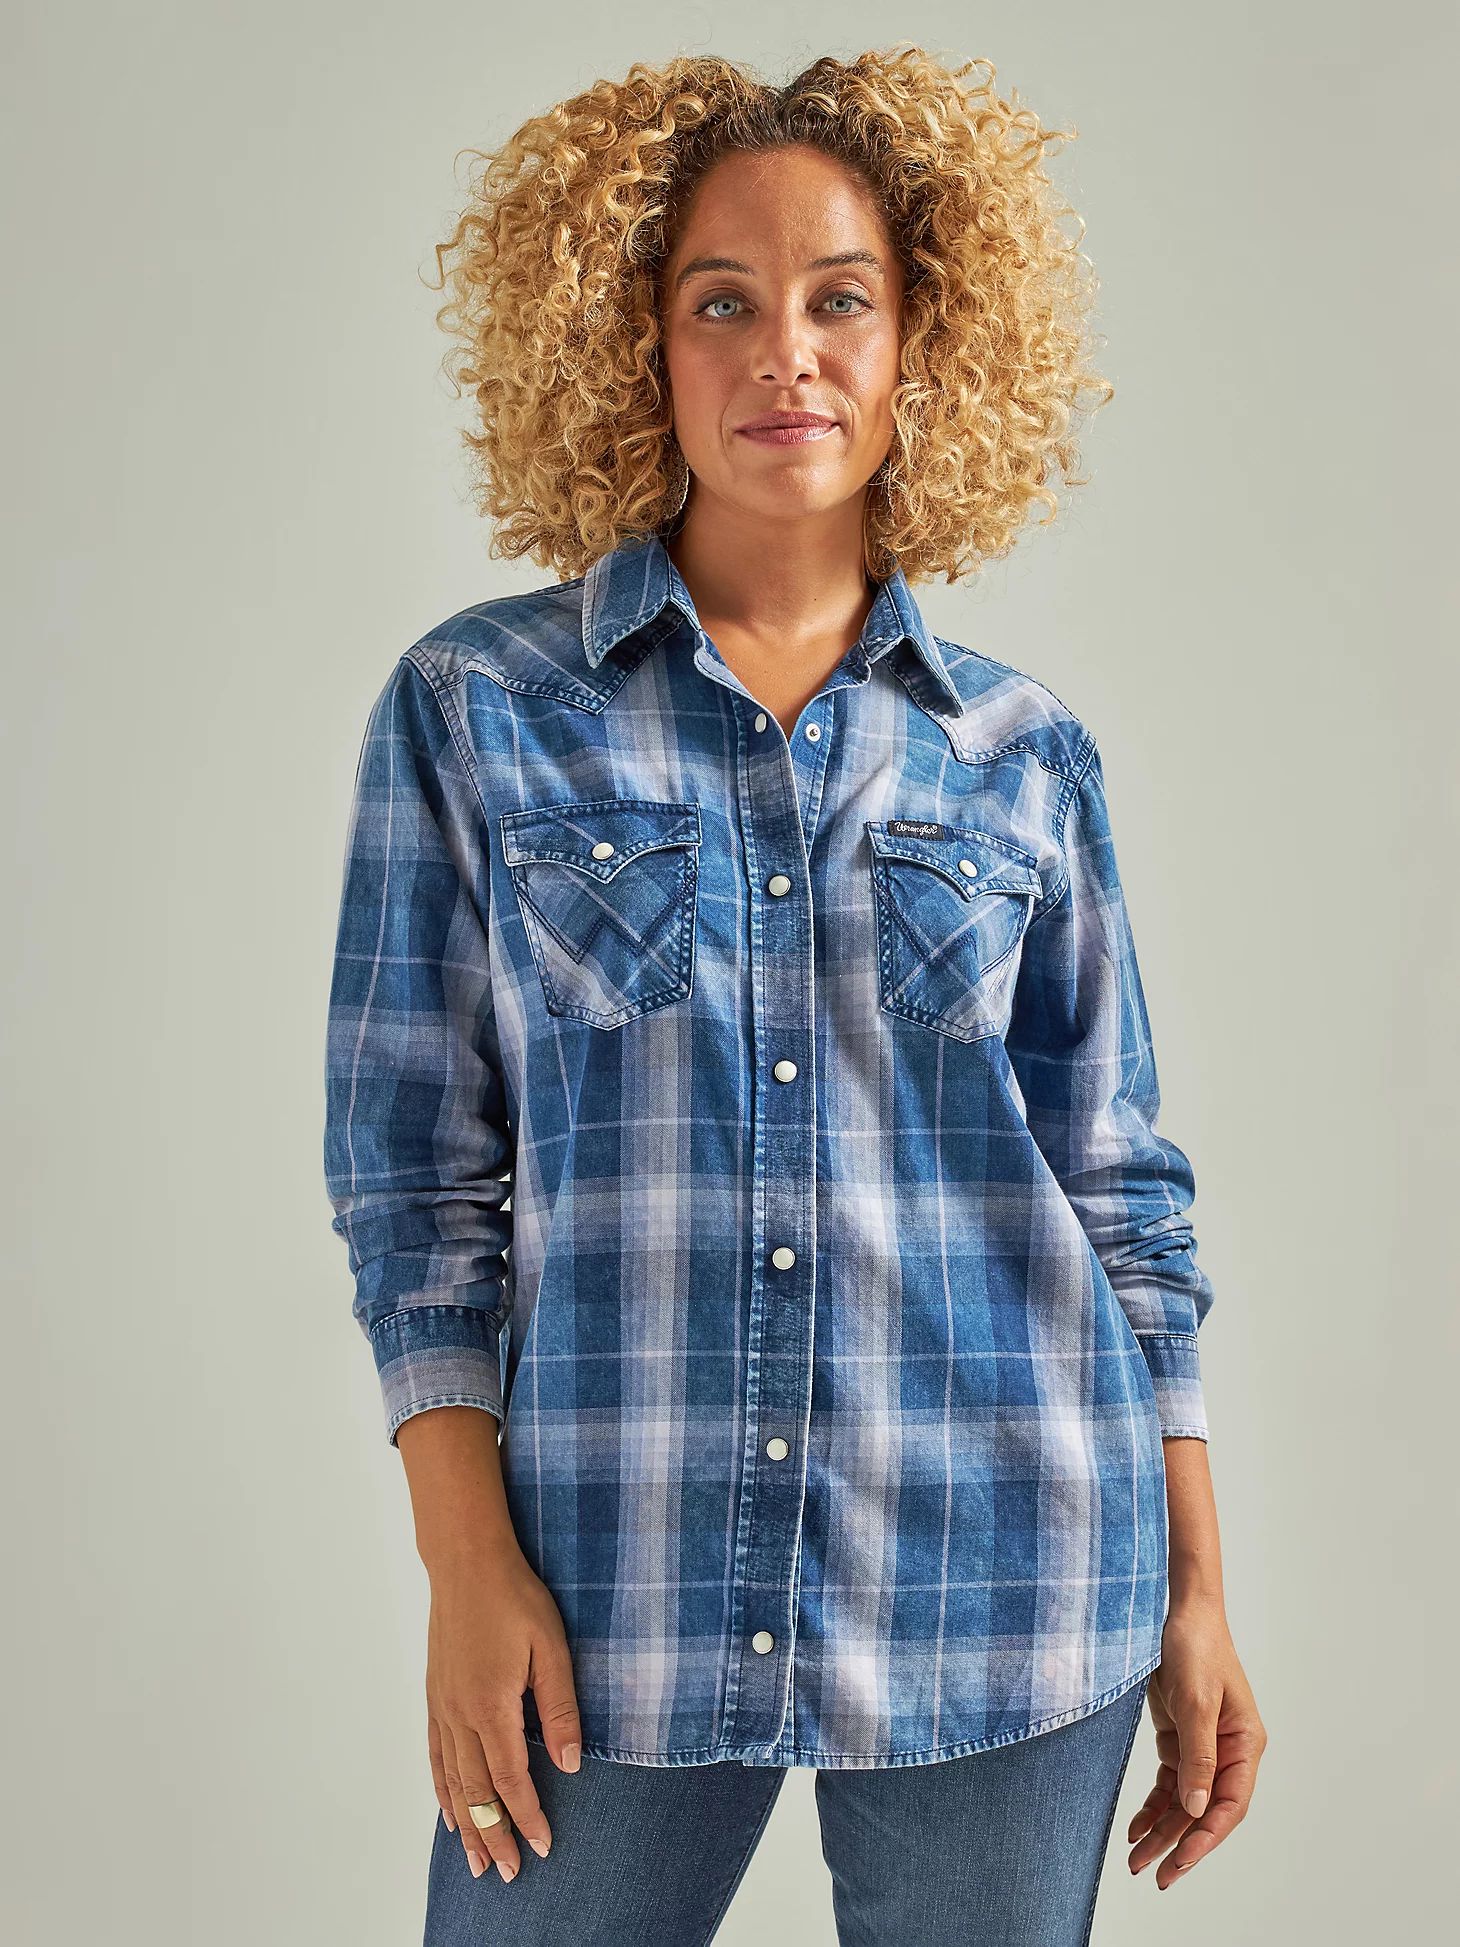 Women's Wrangler Long Sleeve Western Snap Plaid Denim Shirt in Blue Plaid | Wrangler